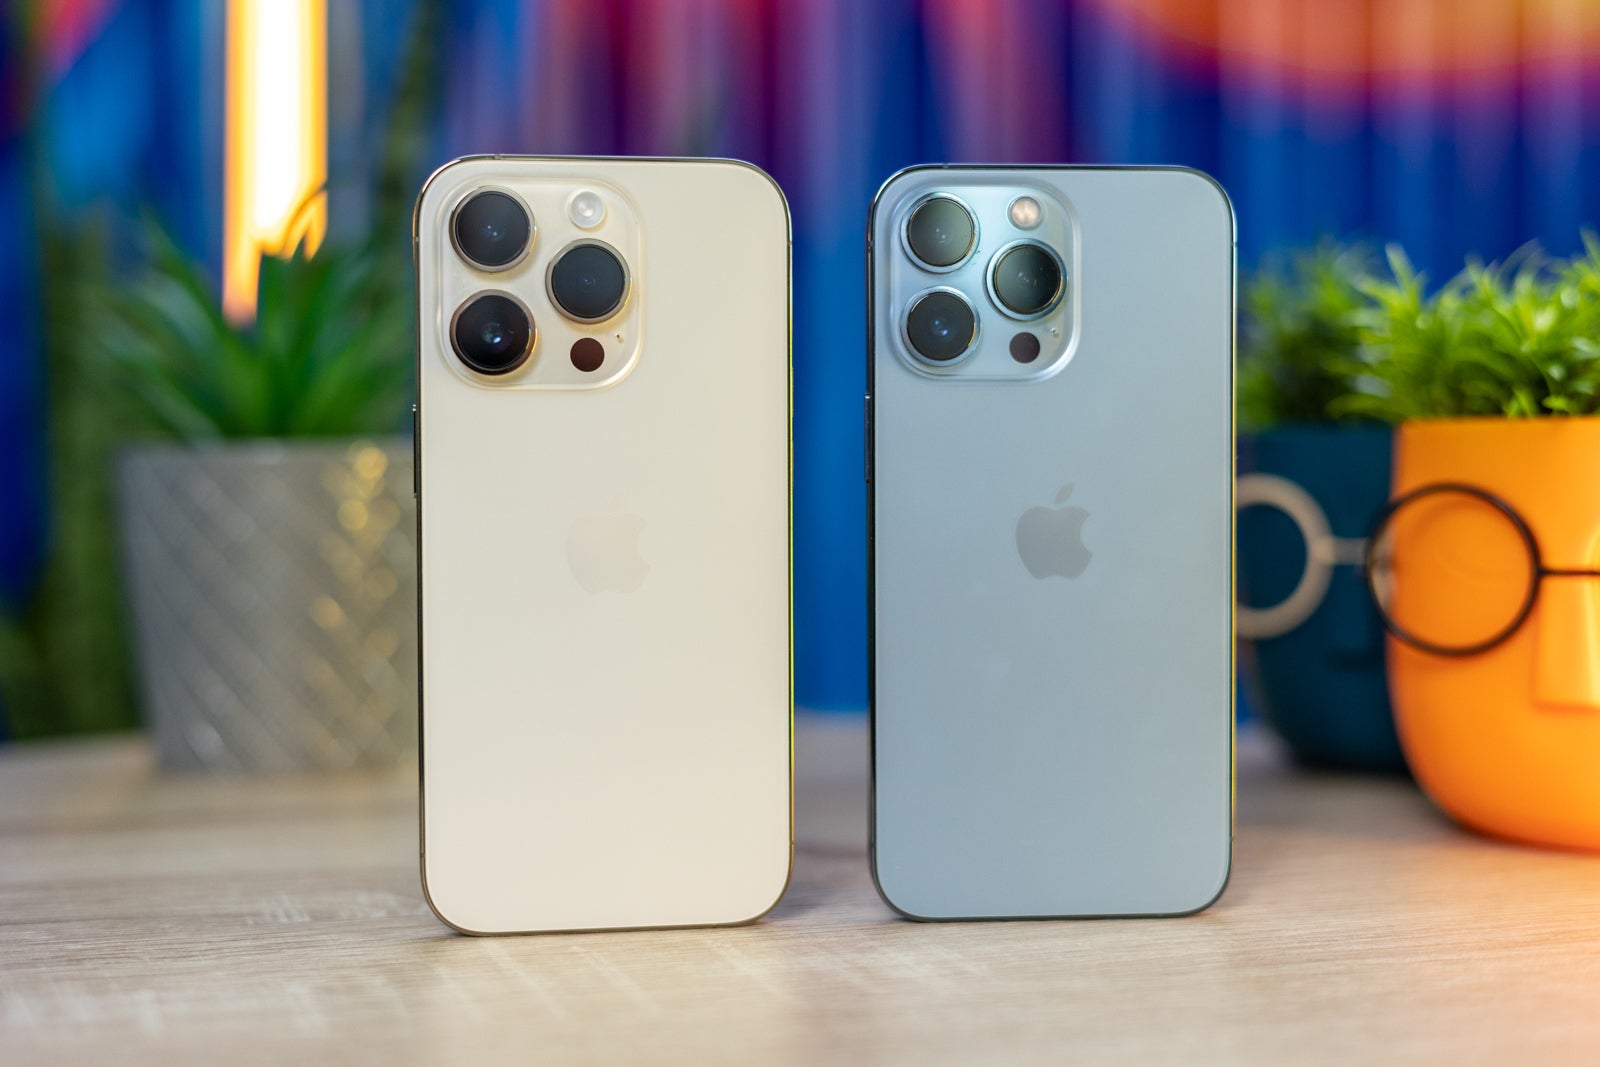 (Credito immagine - PhoneArena) iPhone 14 Pro vs 13 Pro Design - iPhone 14 Pro vs iPhone 13 Pro: differenze principali